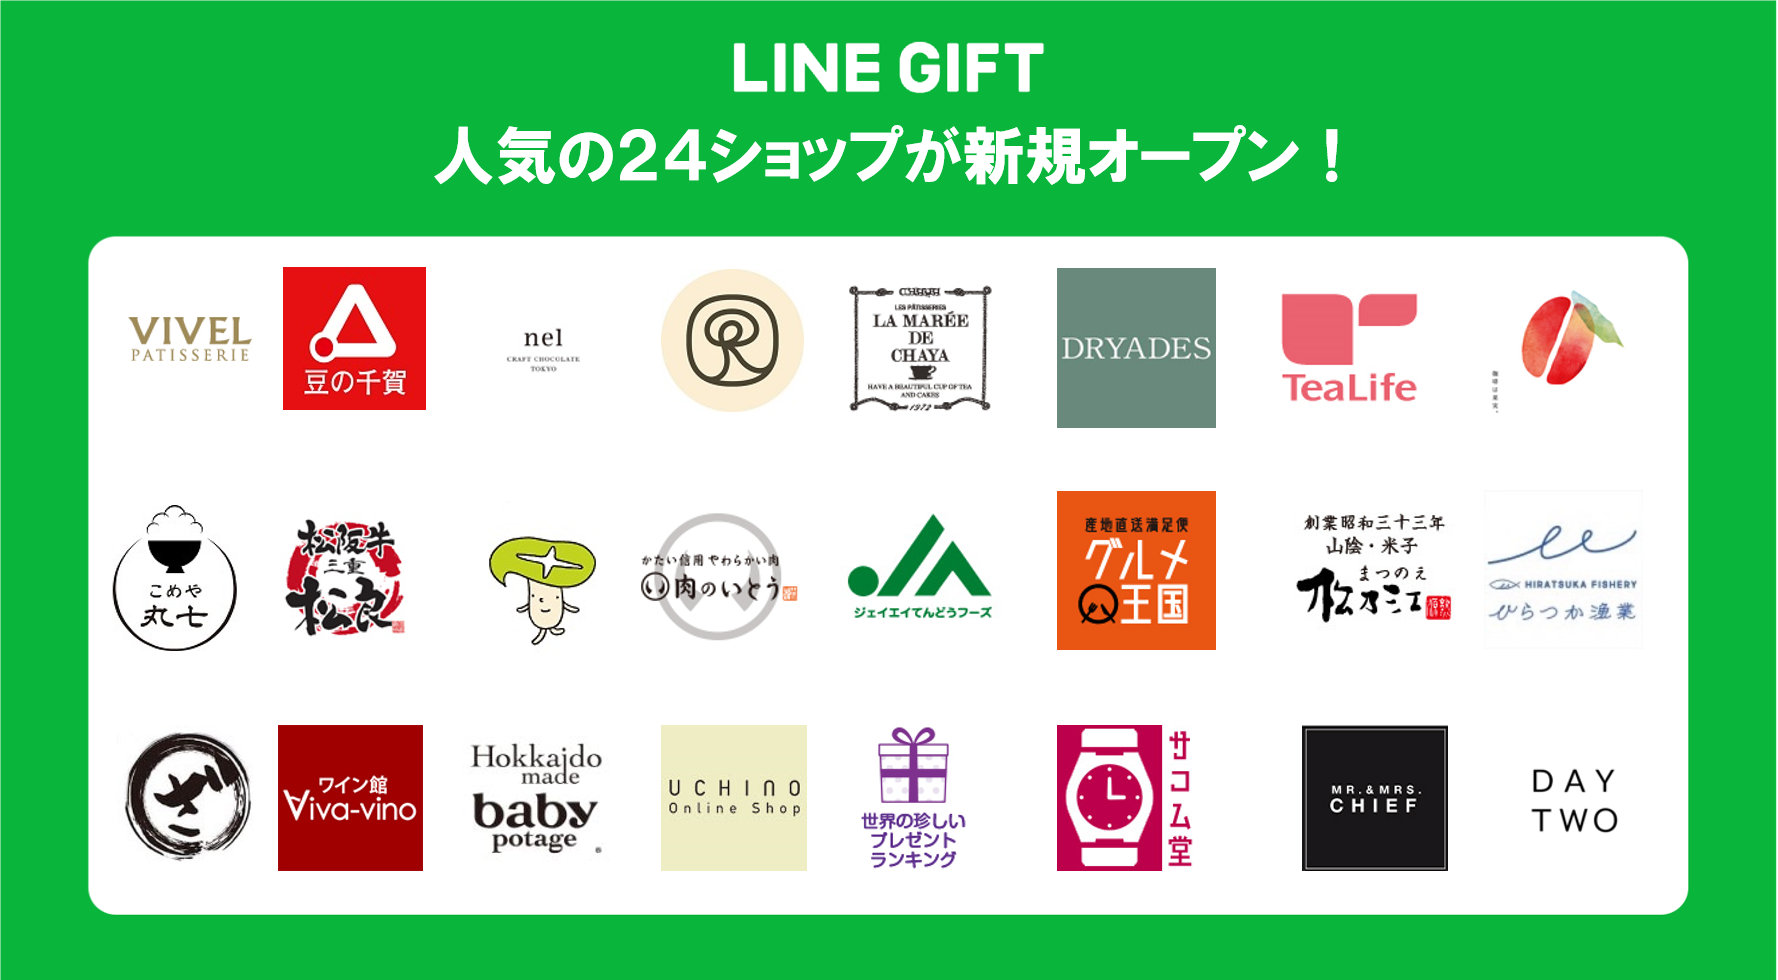 LINEギフトにUAE国内7つ星ホテルで使用される「VIVEL PATISSERIE」、日本で初めてタオルハンカチを発売した「UCHINO Online Shop」など人気の24ショップが新規オープンのサブ画像1